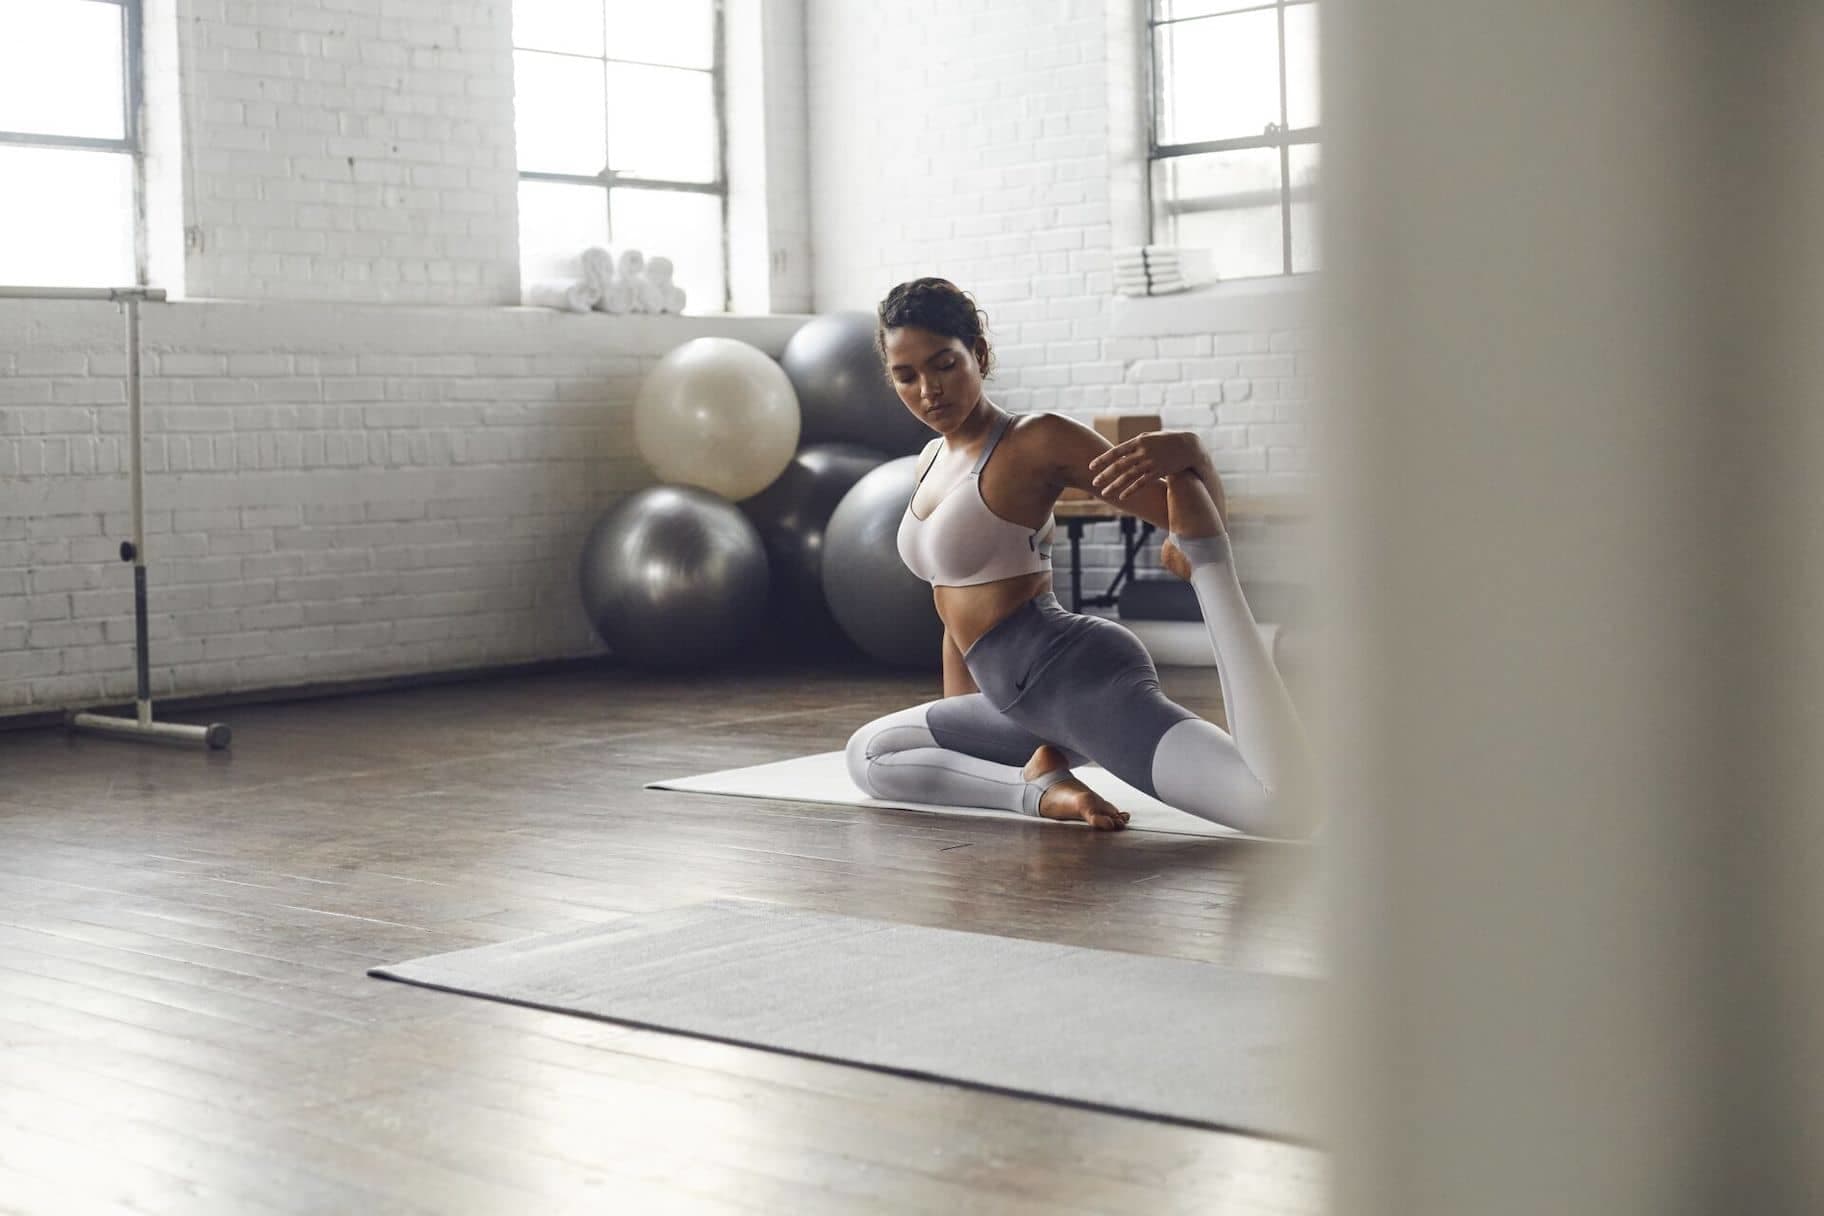 Barry stortbui Mauve Kleding kiezen voor hot yoga: tips om fris en comfortabel te blijven. Nike  BE